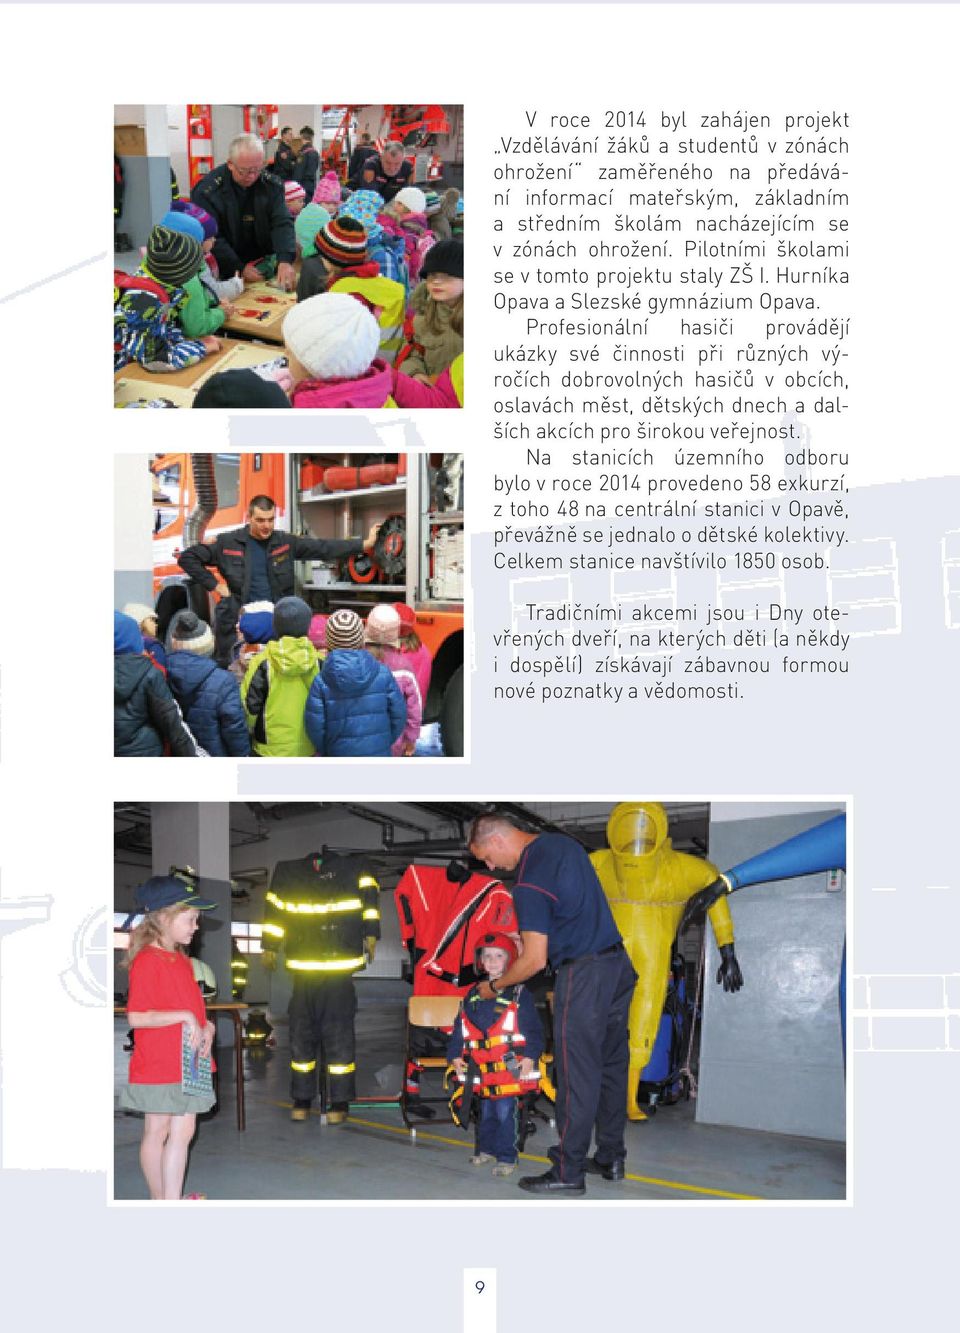 Profesionální hasiči provádějí ukázky své činnosti při různých výročích dobrovolných hasičů v obcích, oslavách měst, dětských dnech a dalších akcích pro širokou veřejnost.